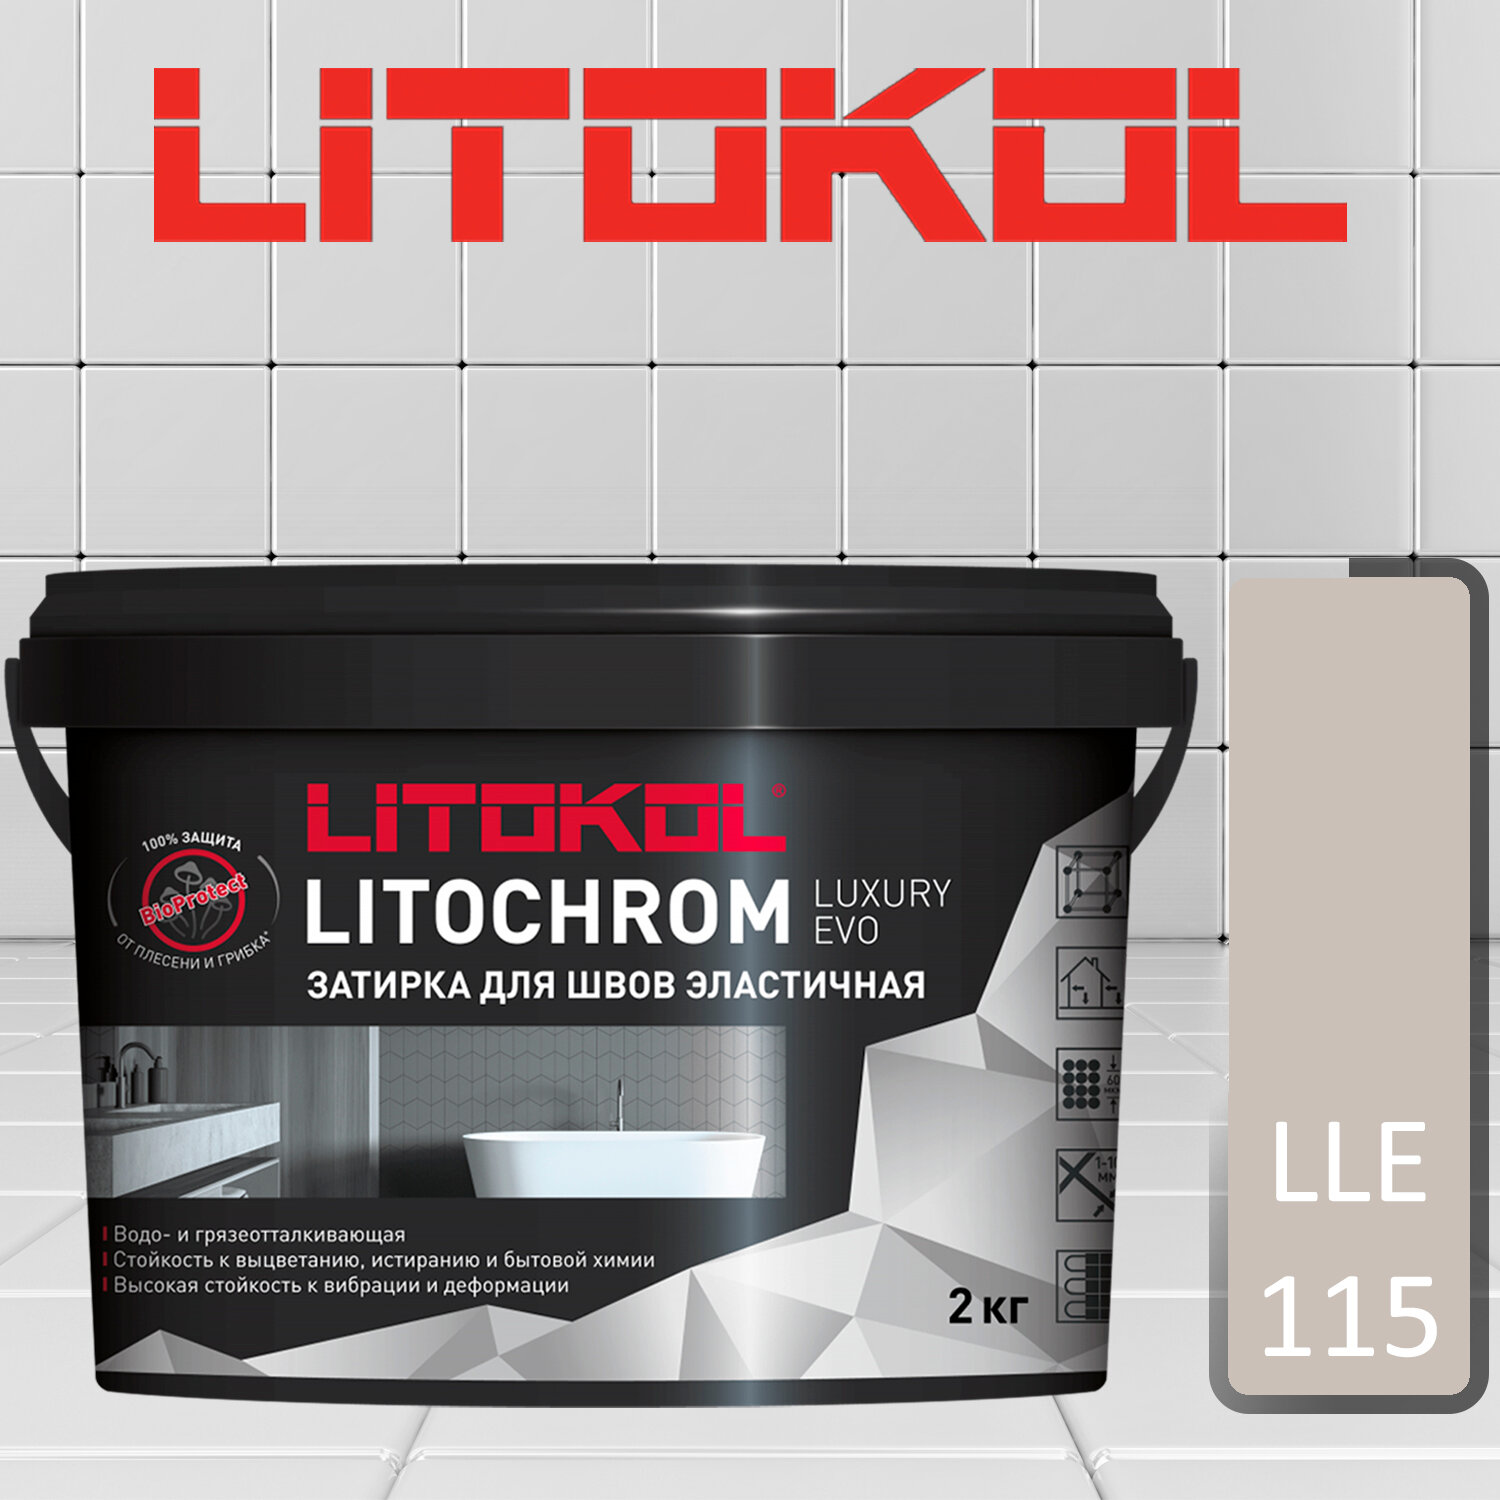 Затирка полимерно-цементная Litokol Litochrom Luxary Evo LLE.115 светло-серый 2 кг